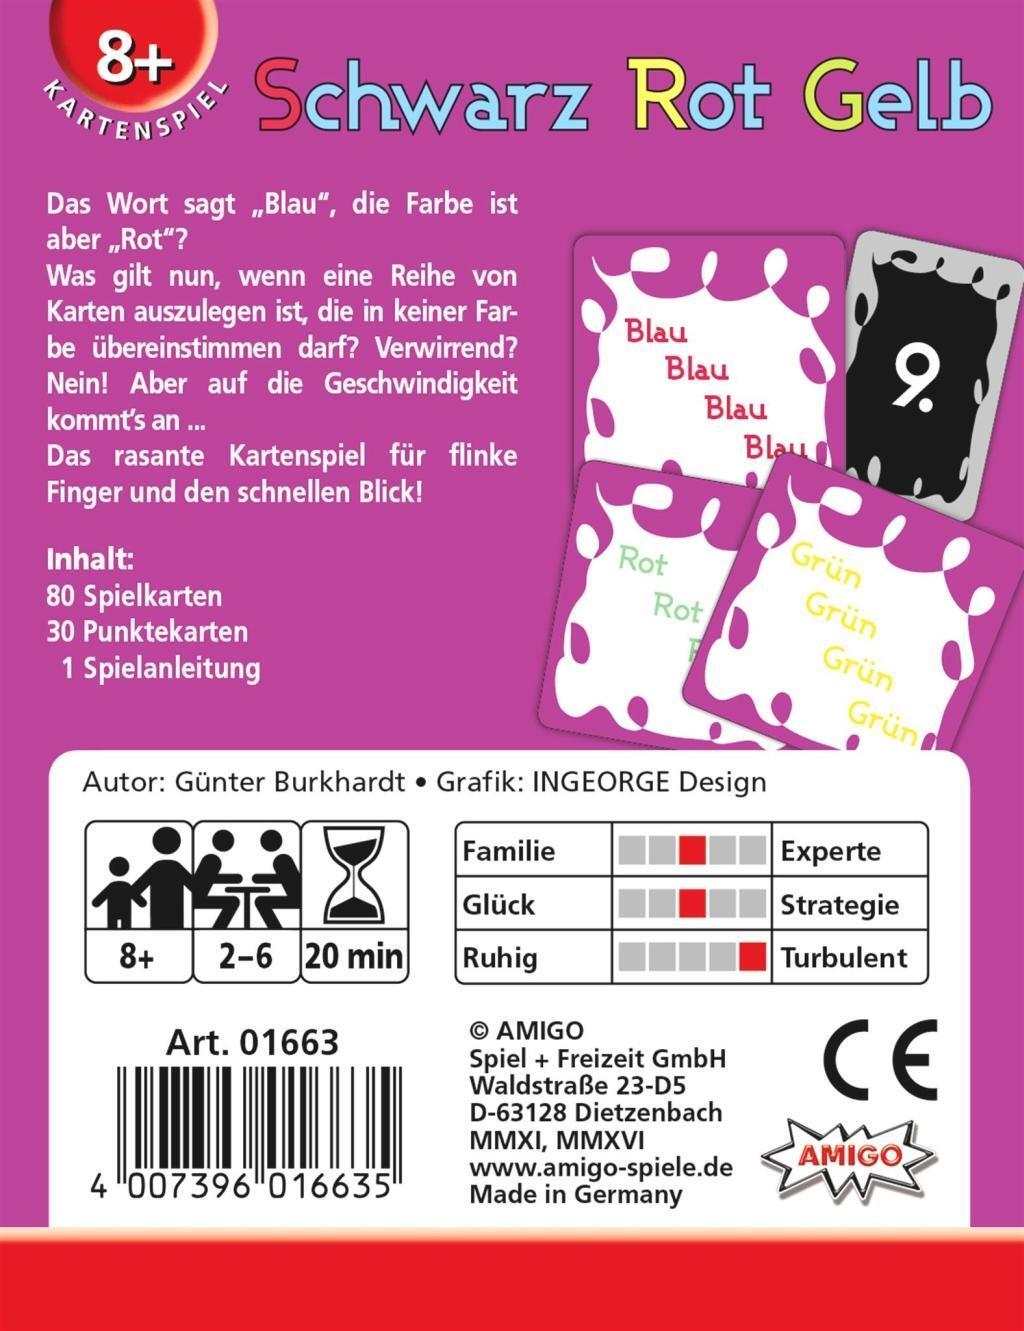 Bild: 4007396016635 | Schwarz Rot Gelb Refresh | AMIGO - Kartenspiel | Günter Burkhardt